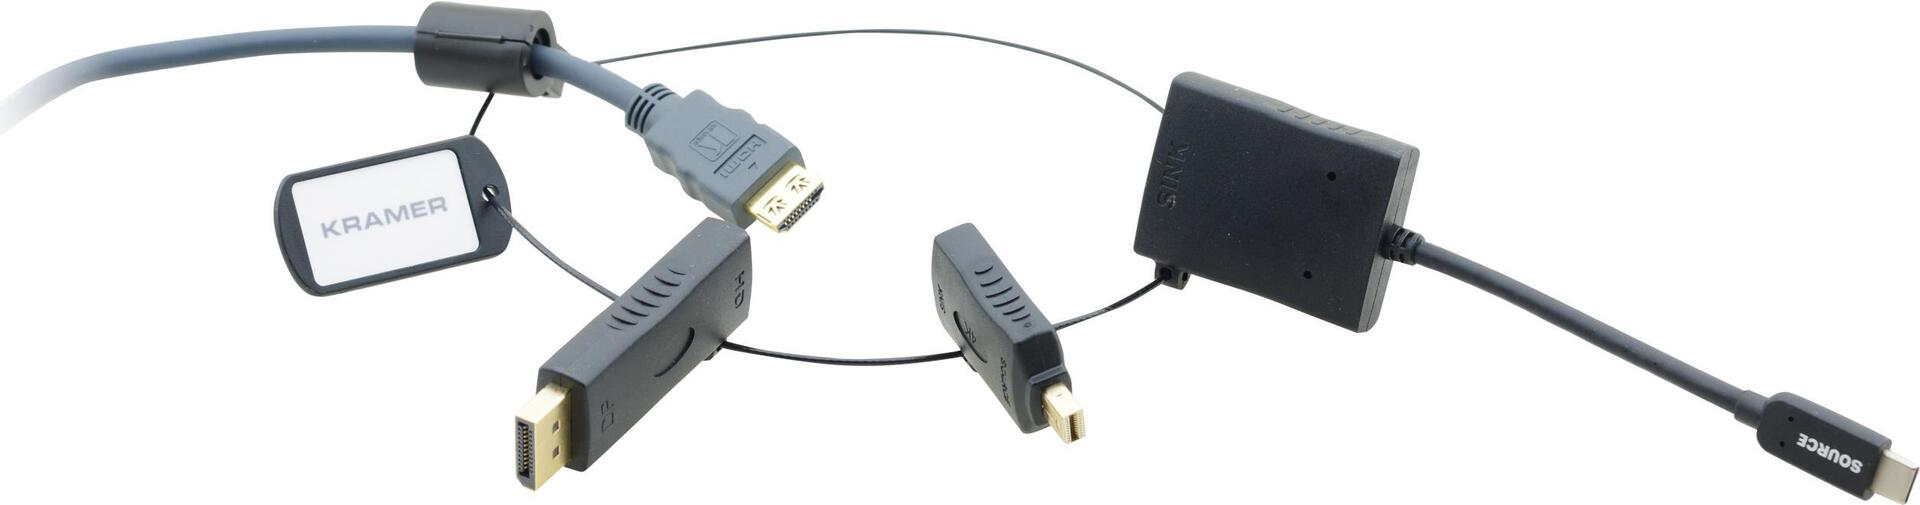 Kramer Electronics AD-RING-7 Kabelschnittstellen-/Gender-Adapter USB C (99-9191032)